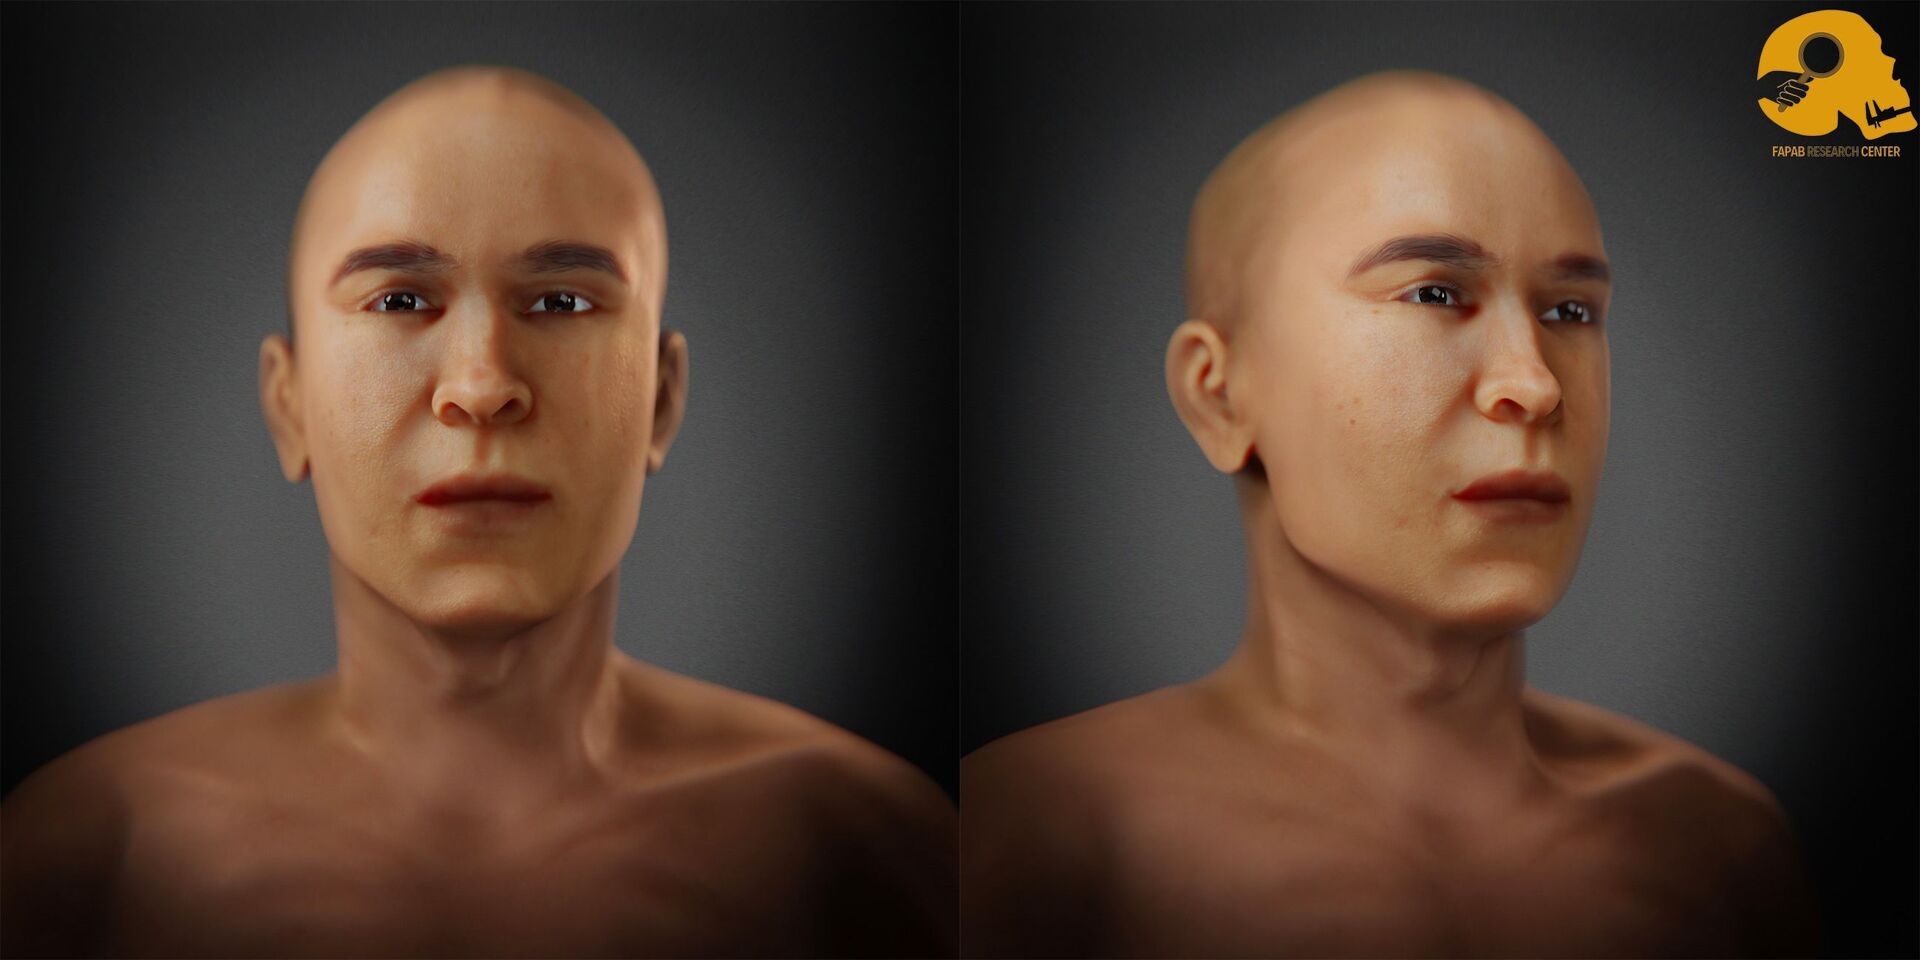 Rosto de pai do rei Tutancâmon é revelado em reconstrução facial 3D de artista brasileiro (FOTOS) - Sputnik Brasil, 1920, 26.03.2021